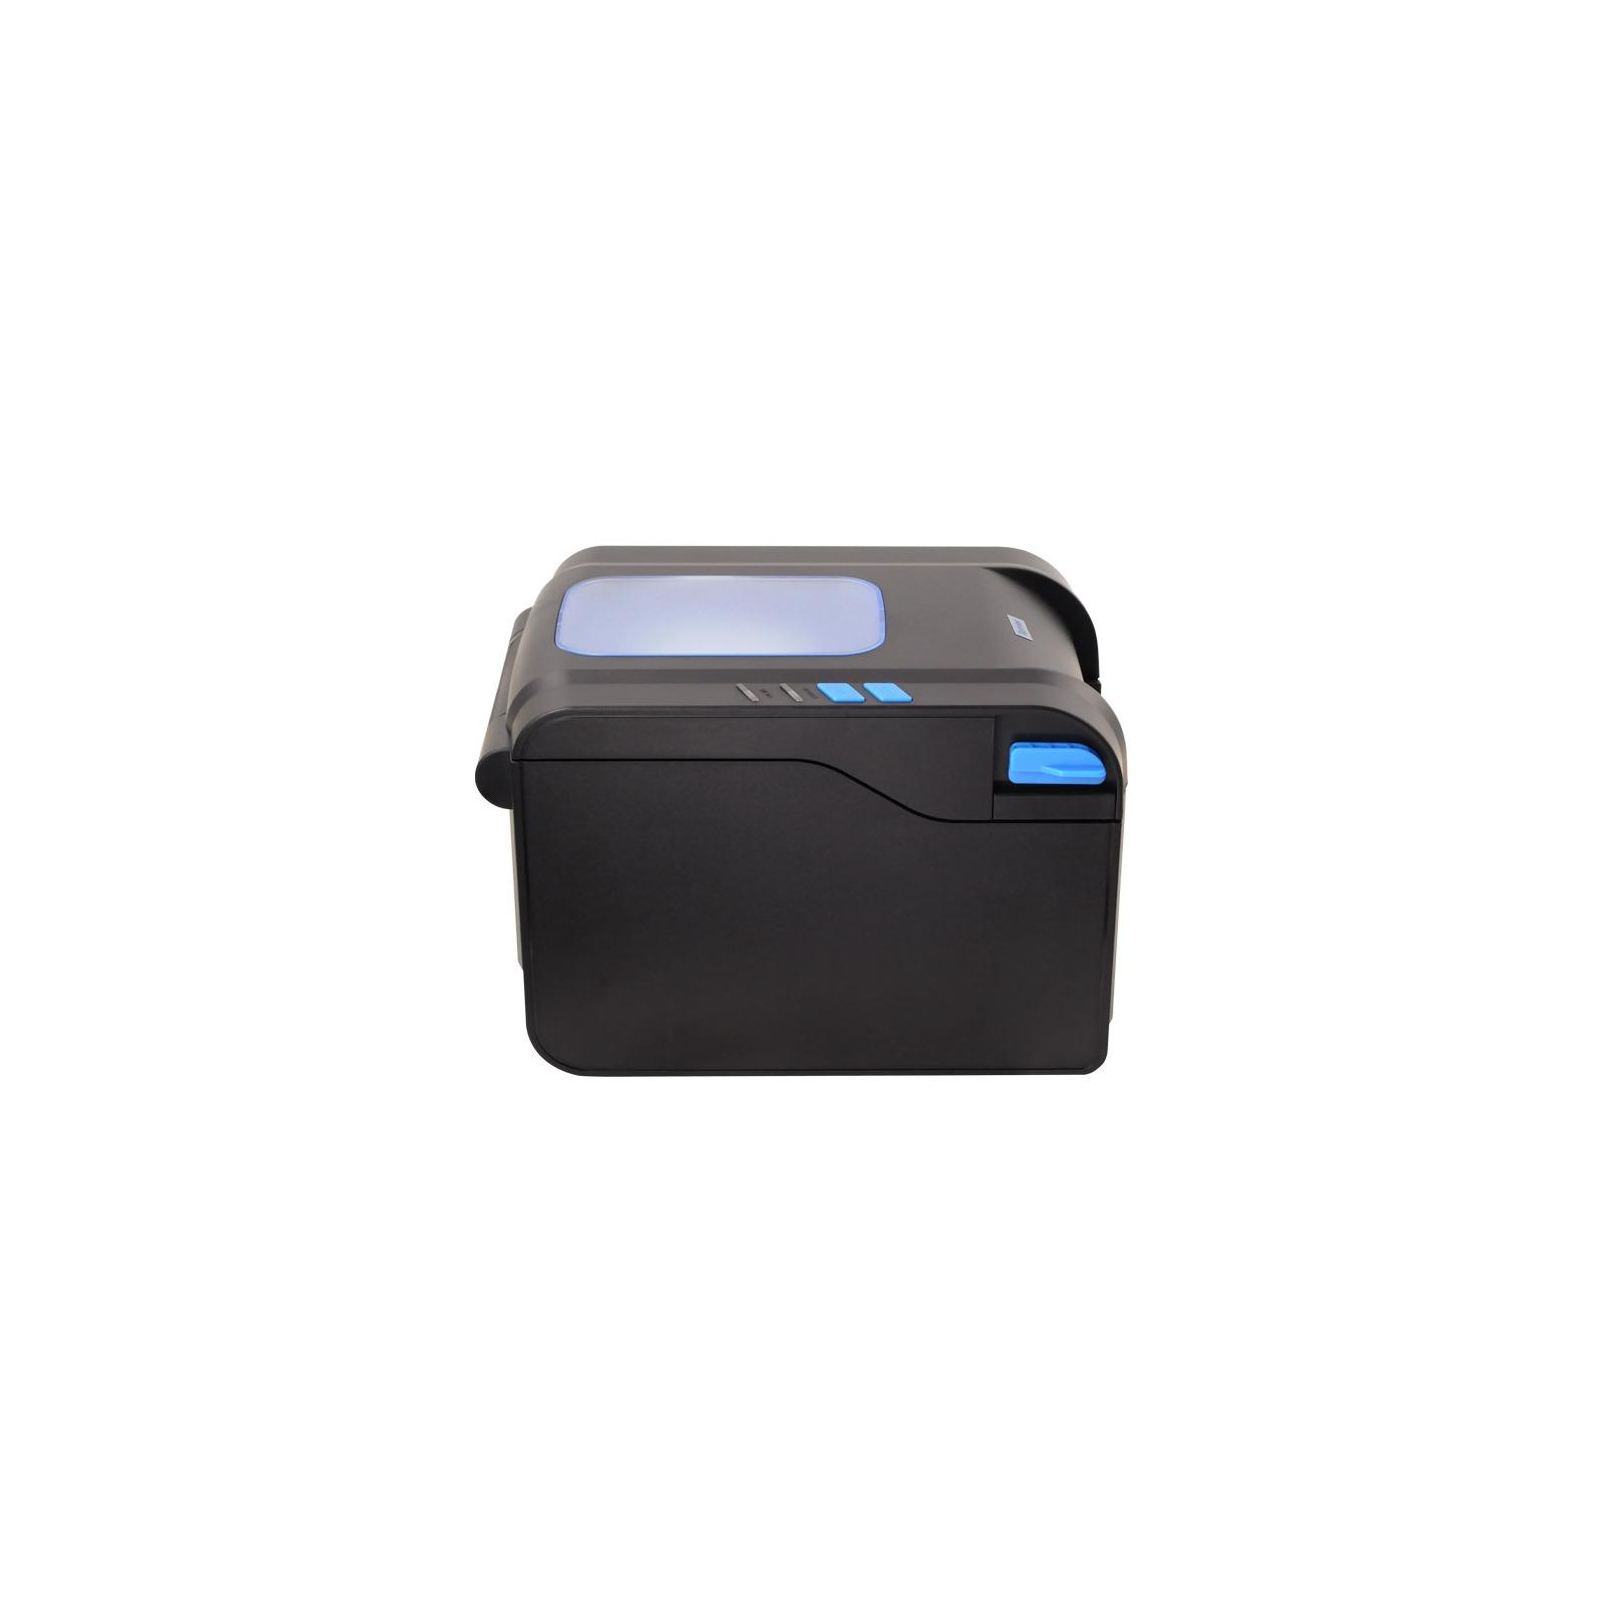 Принтер етикеток X-PRINTER XP-370B USB (XP-370B) зображення 3